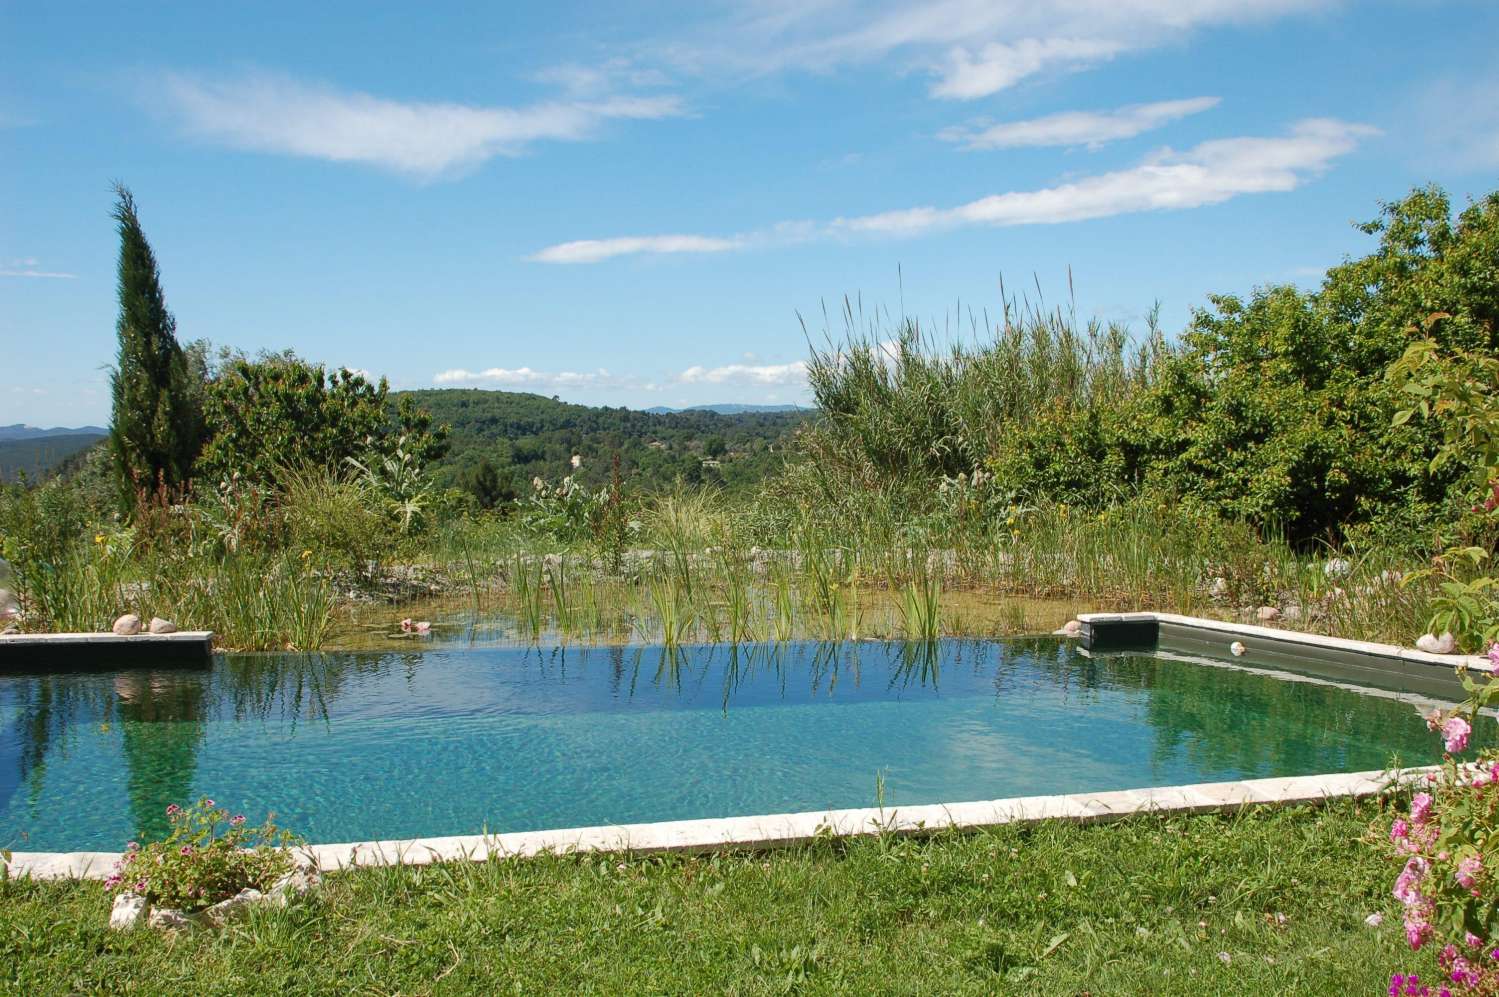 La piscine naturelle, une alternative écologique